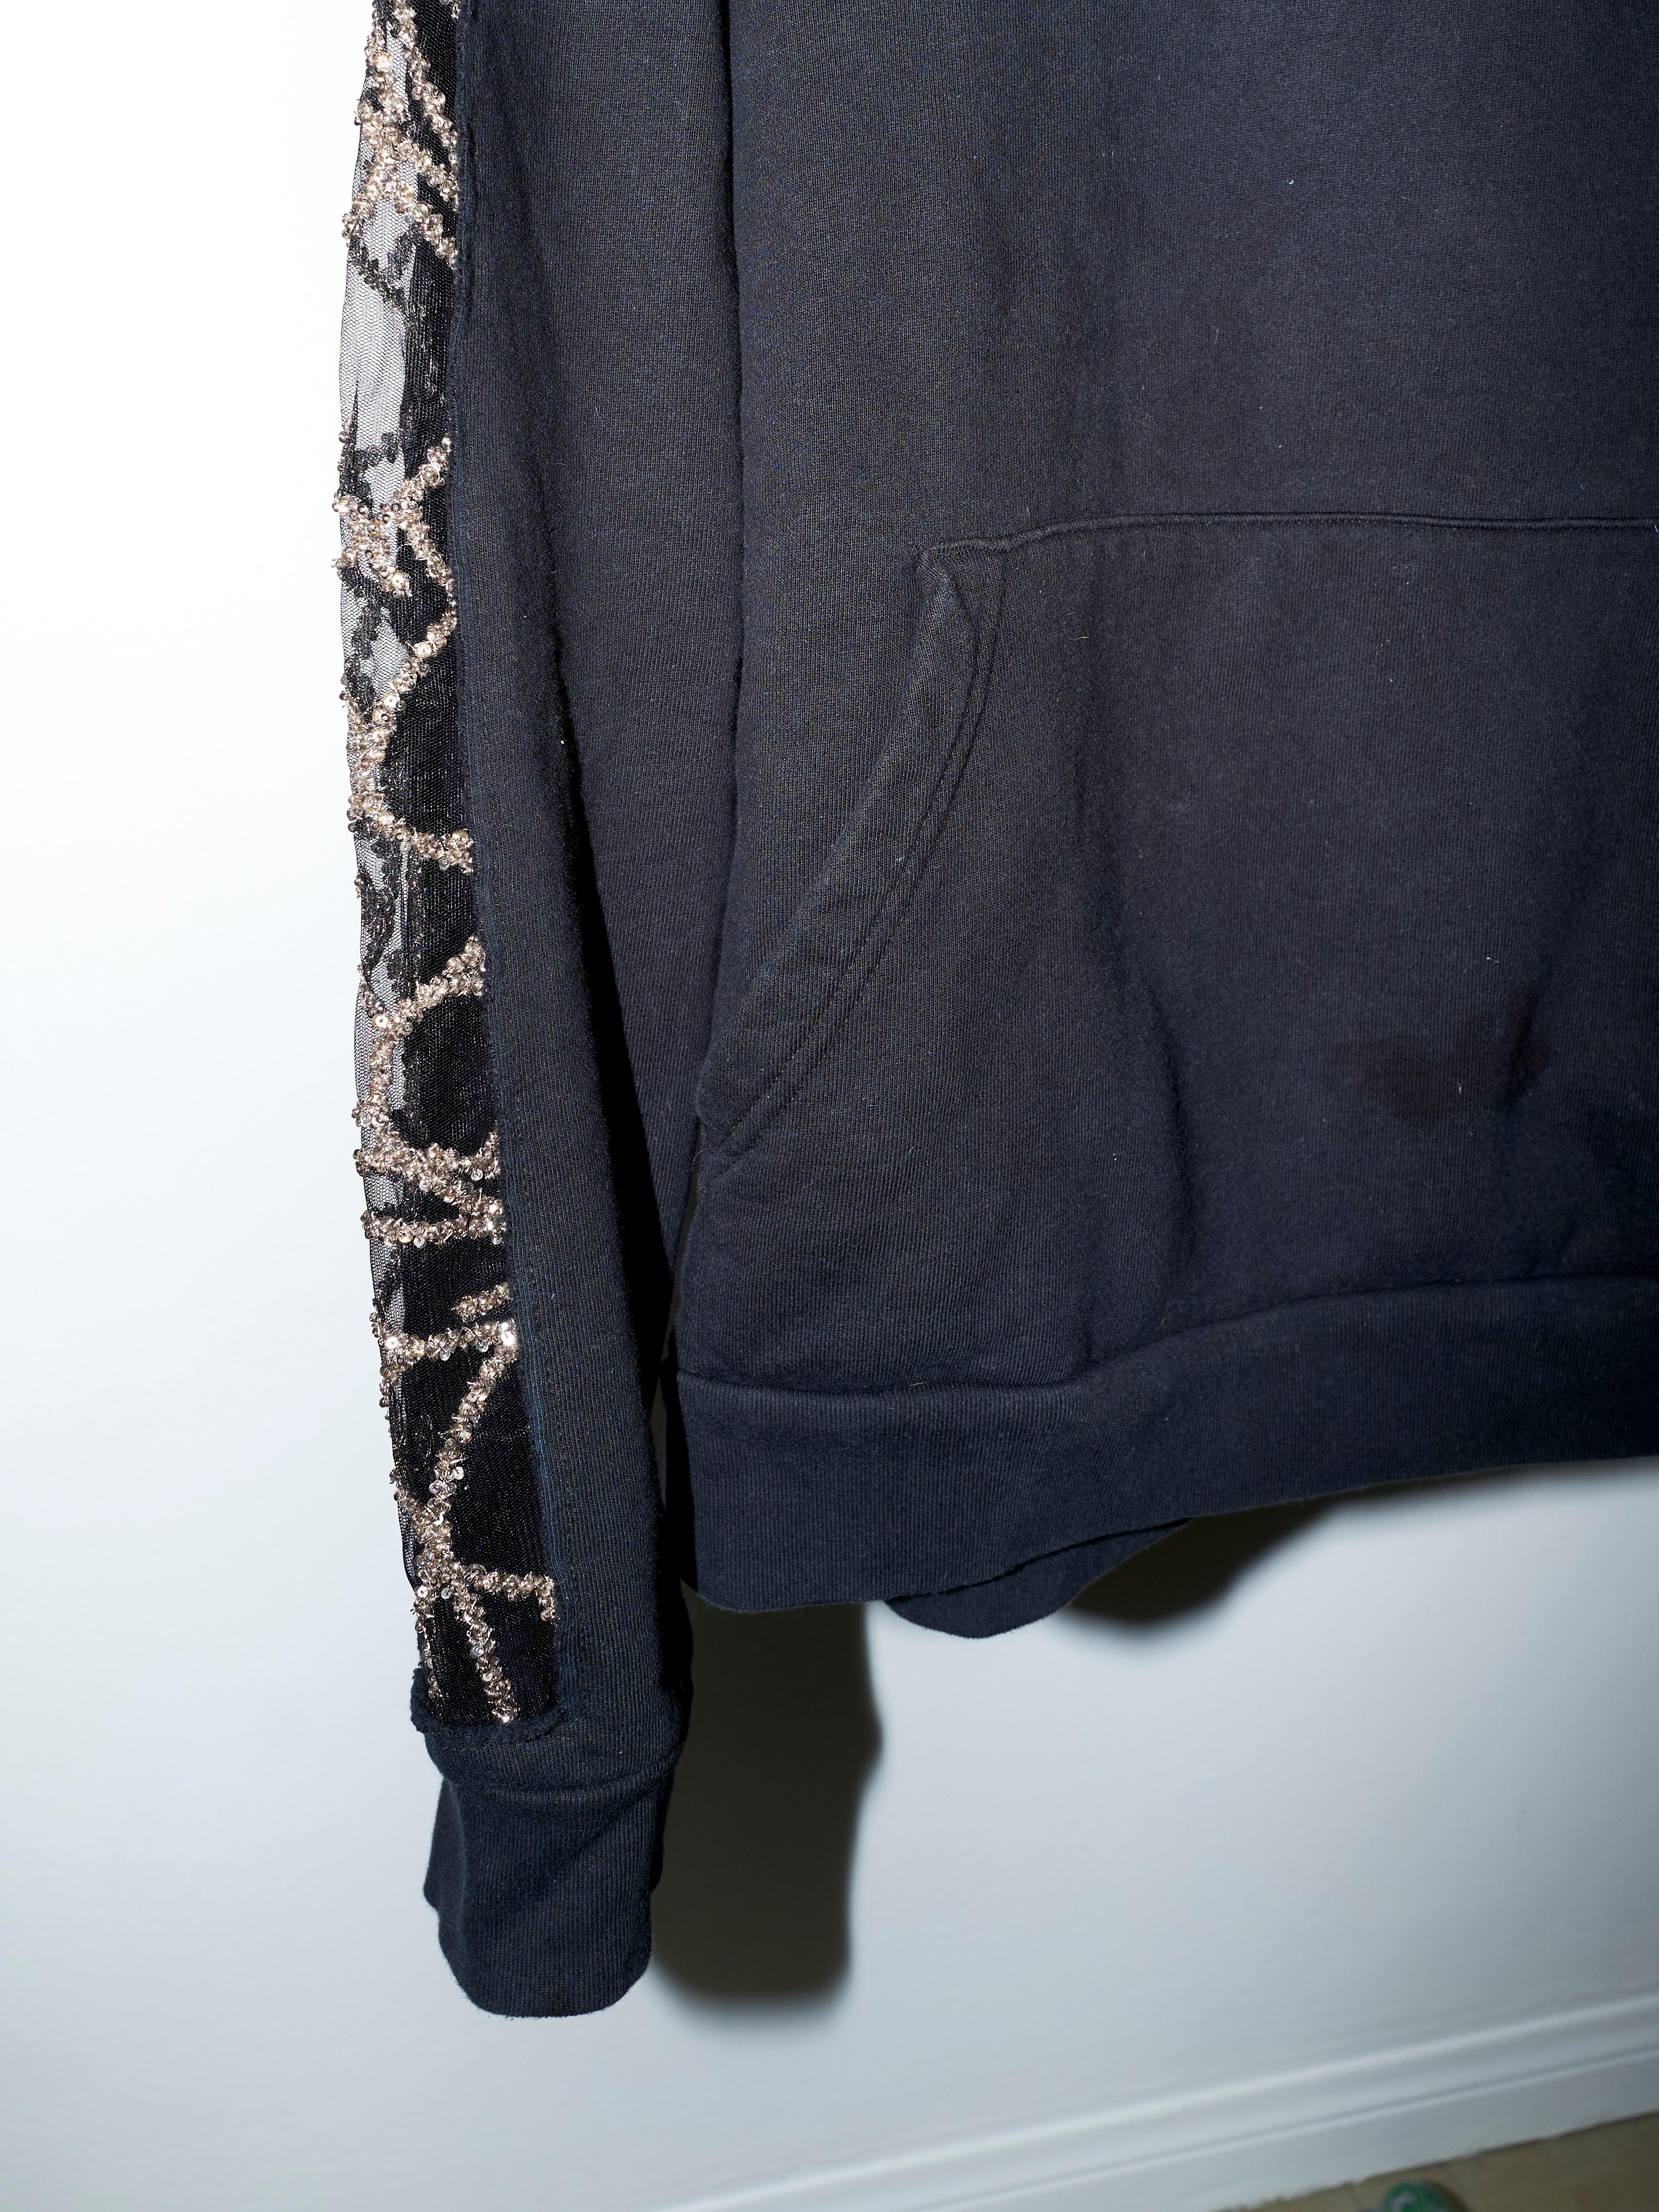 Black Hoodie Sweatshirt Transparent Sheer Mesh Chrystal Embroidery J Dauphin 5